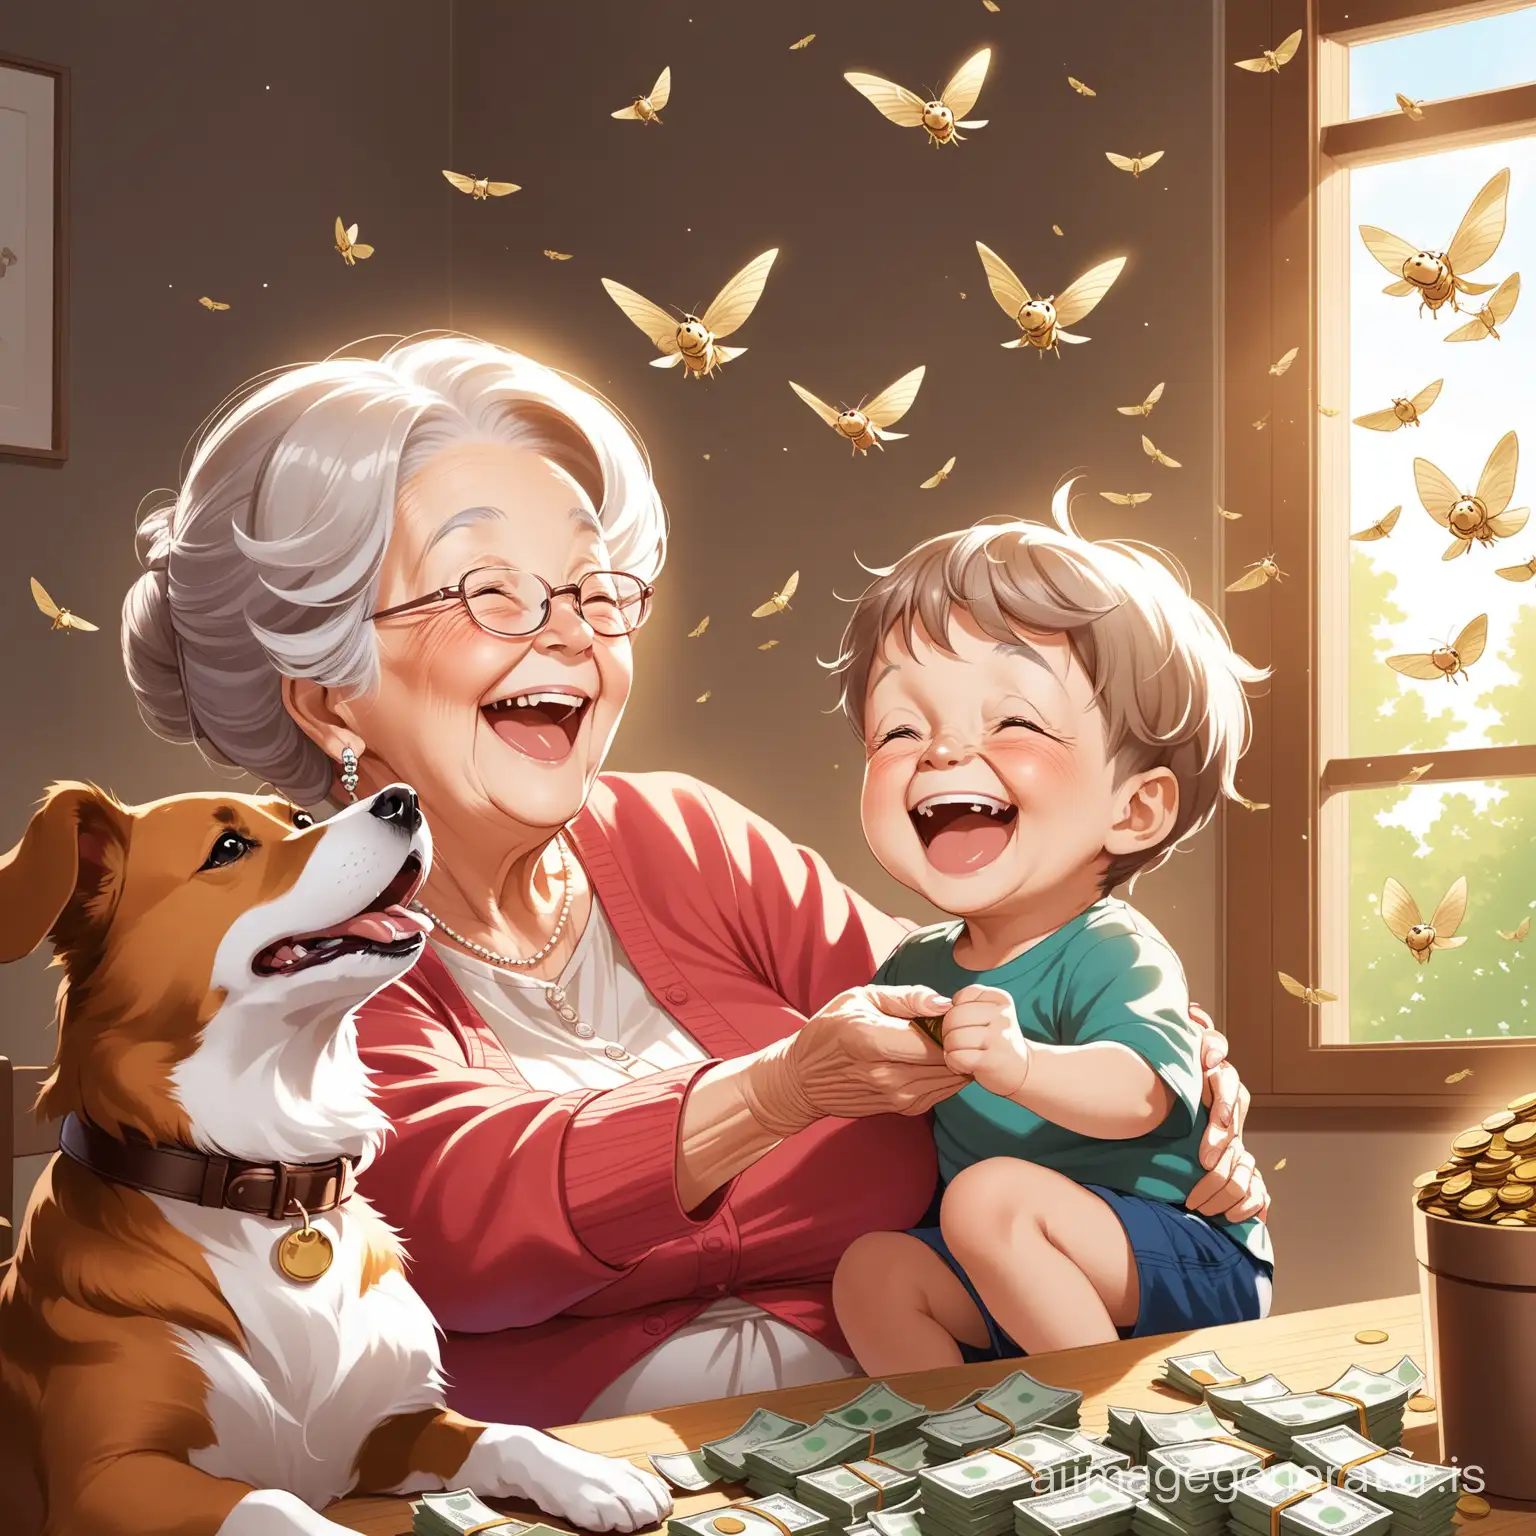 Joyful-Grandma-Boy-and-Dog-Surrounded-by-Flying-Money